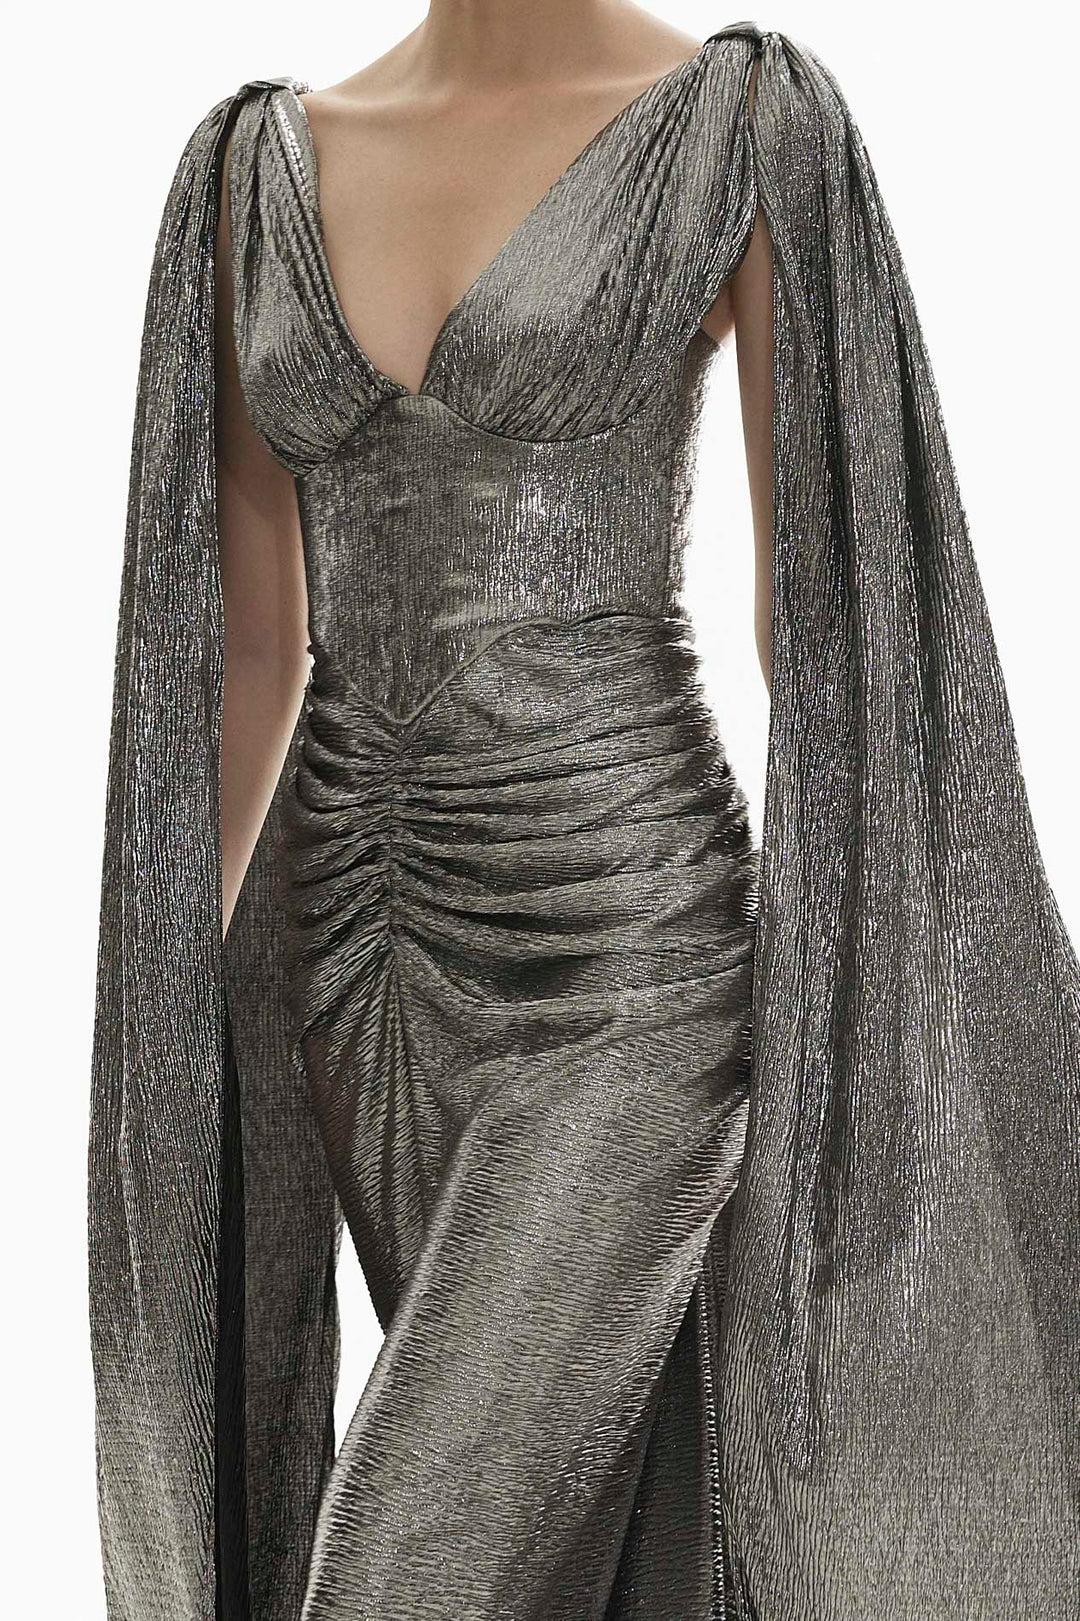 Sari Long Platinum Metallic Light Crepe Dress With Capes